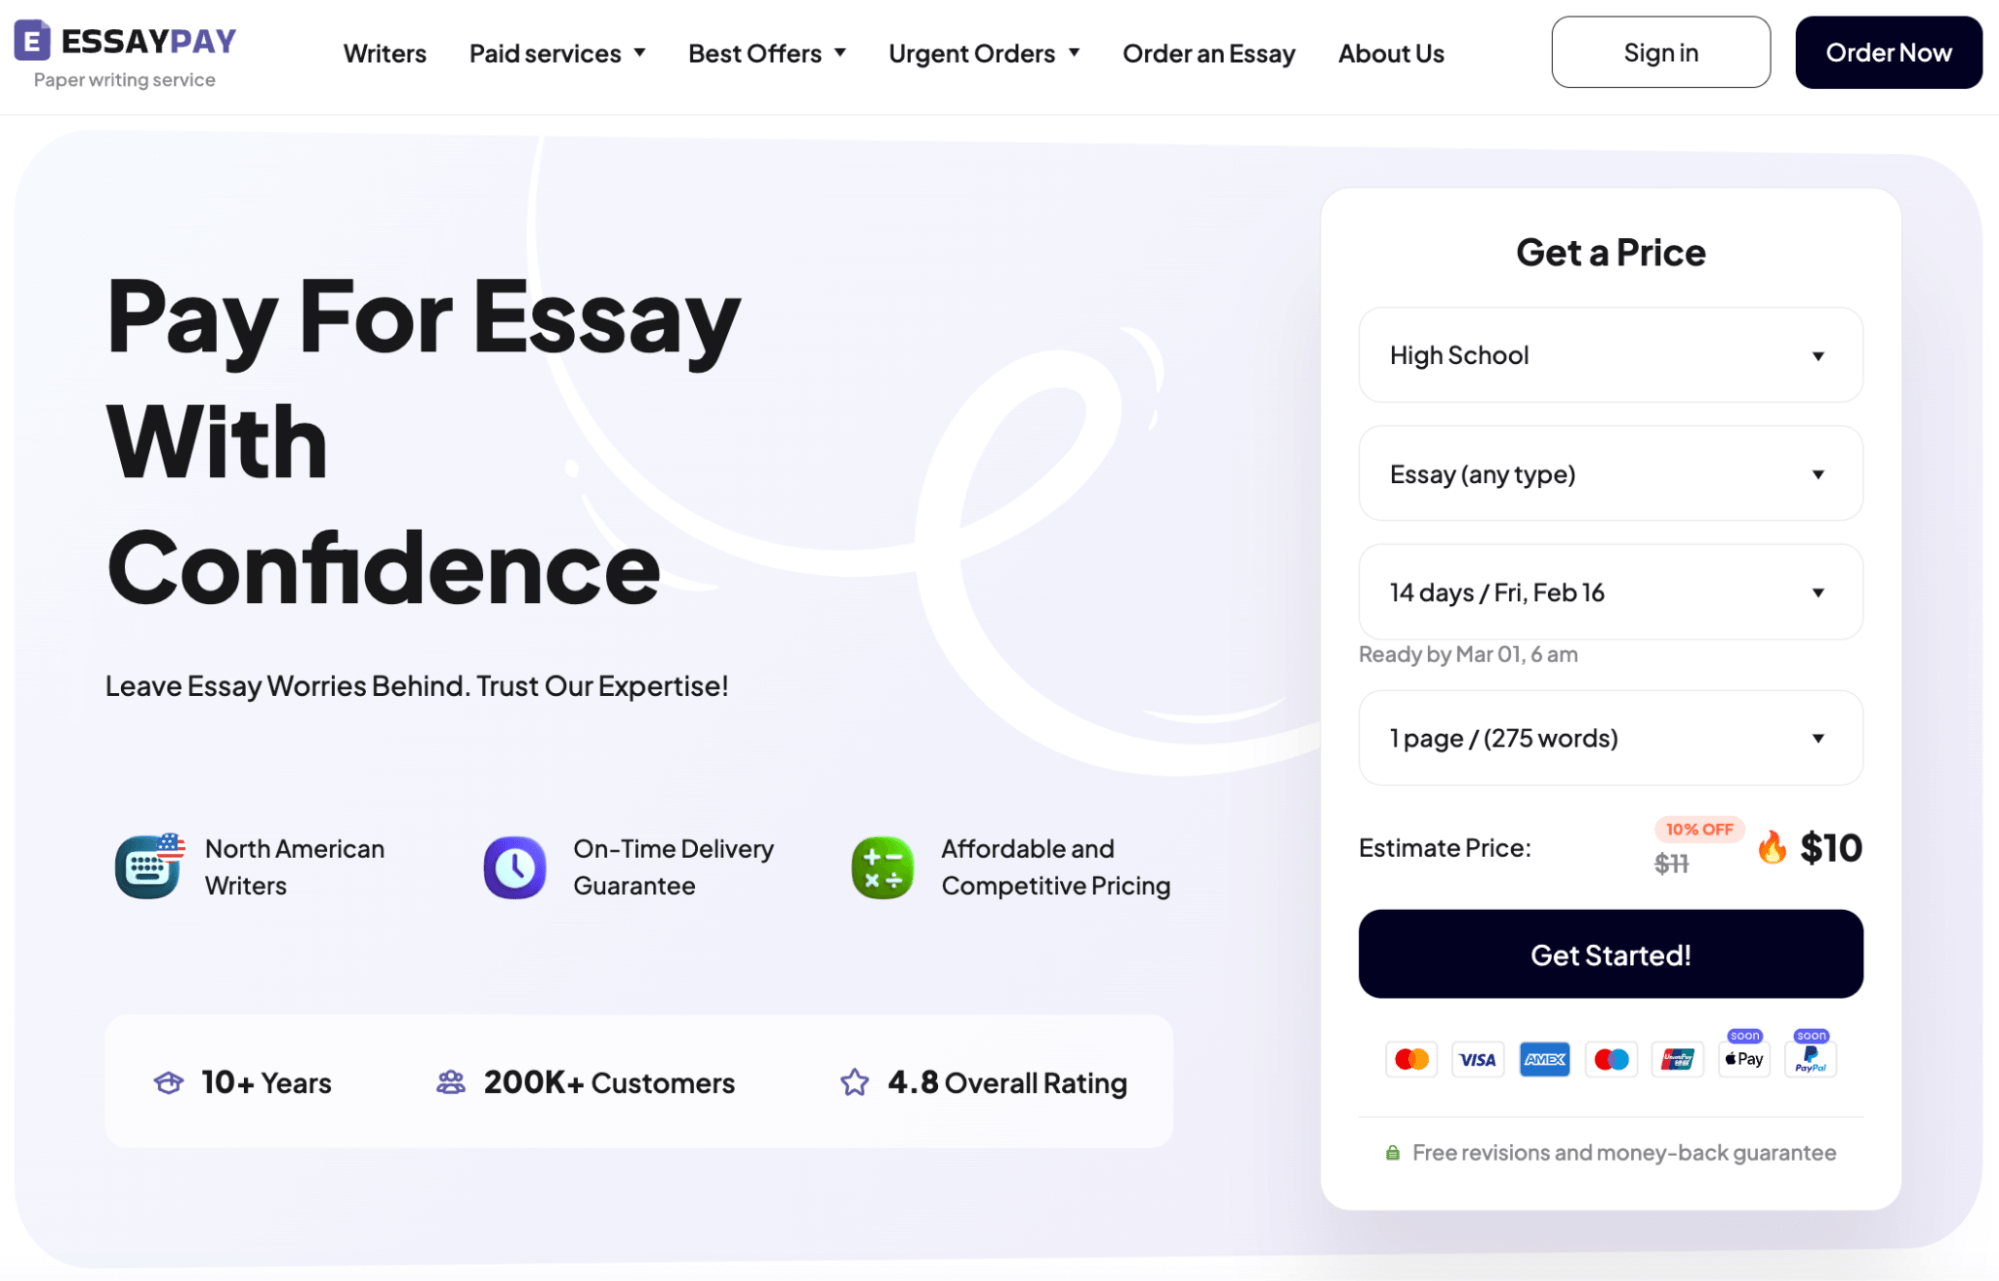 essaypay.com overview